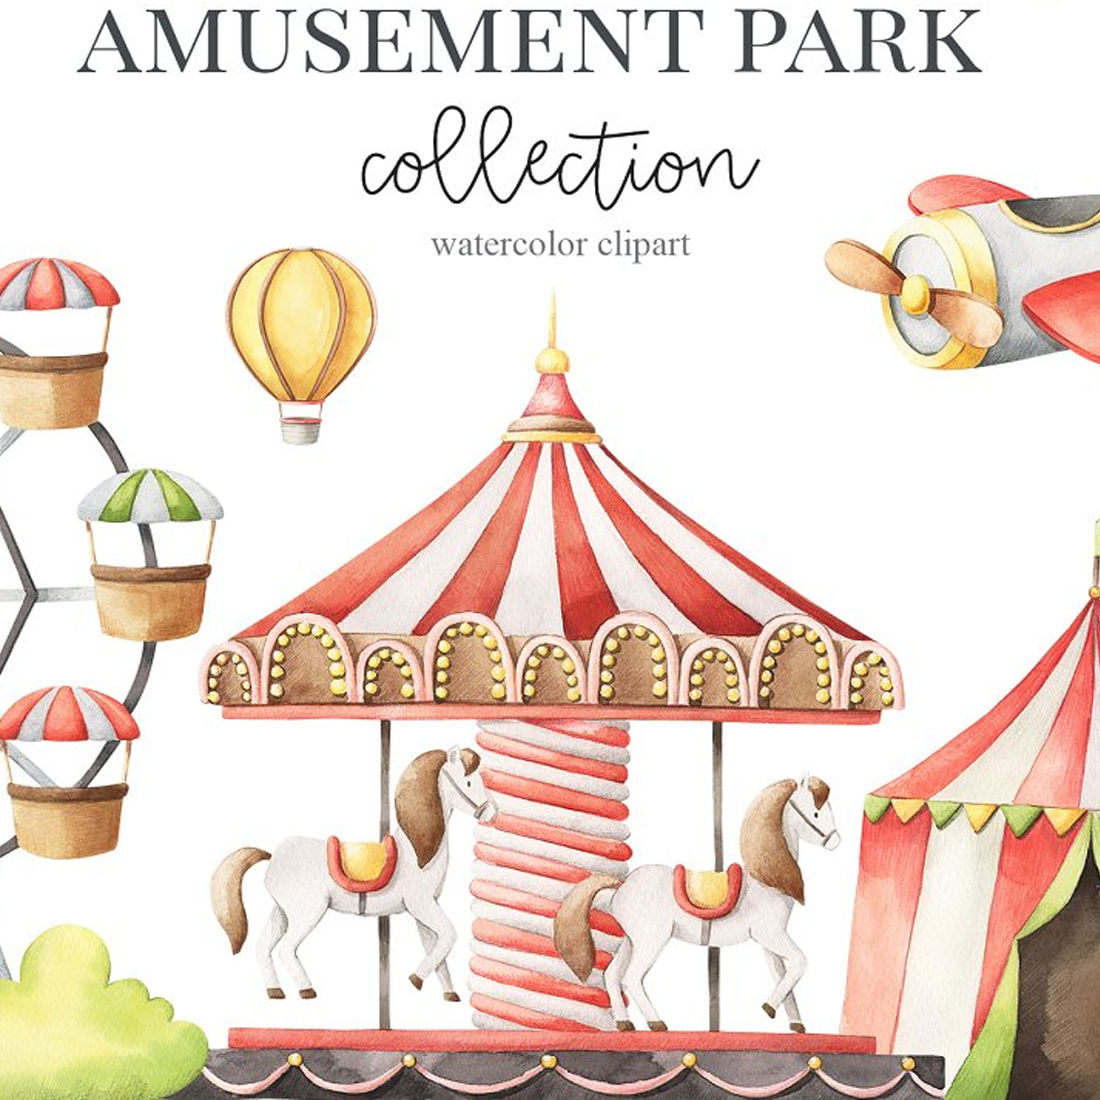 Images preview amusement park watercolor set.